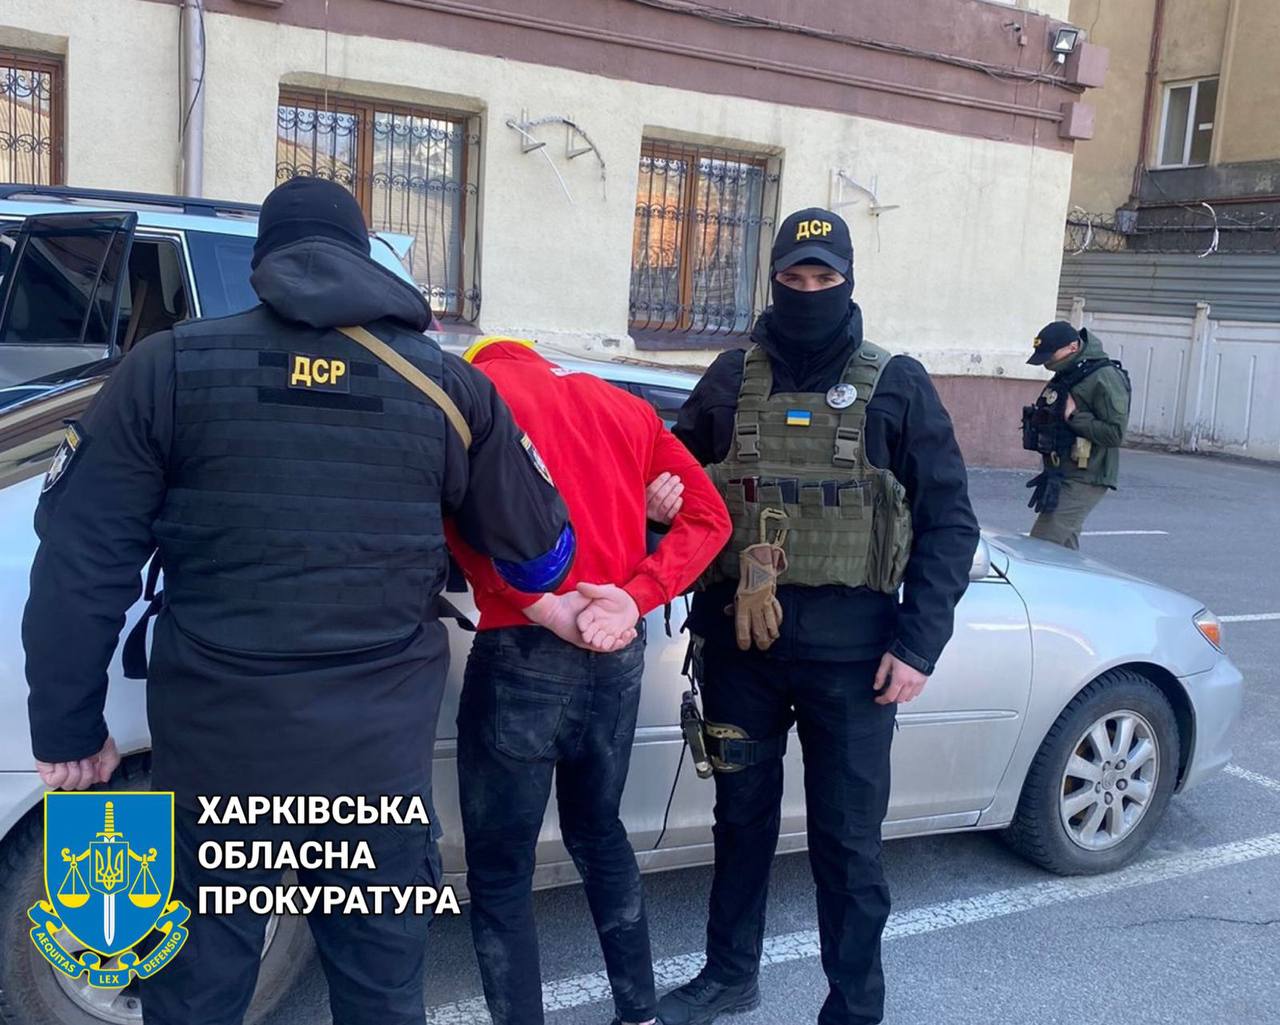 Под Харьковом застрелили трех человек